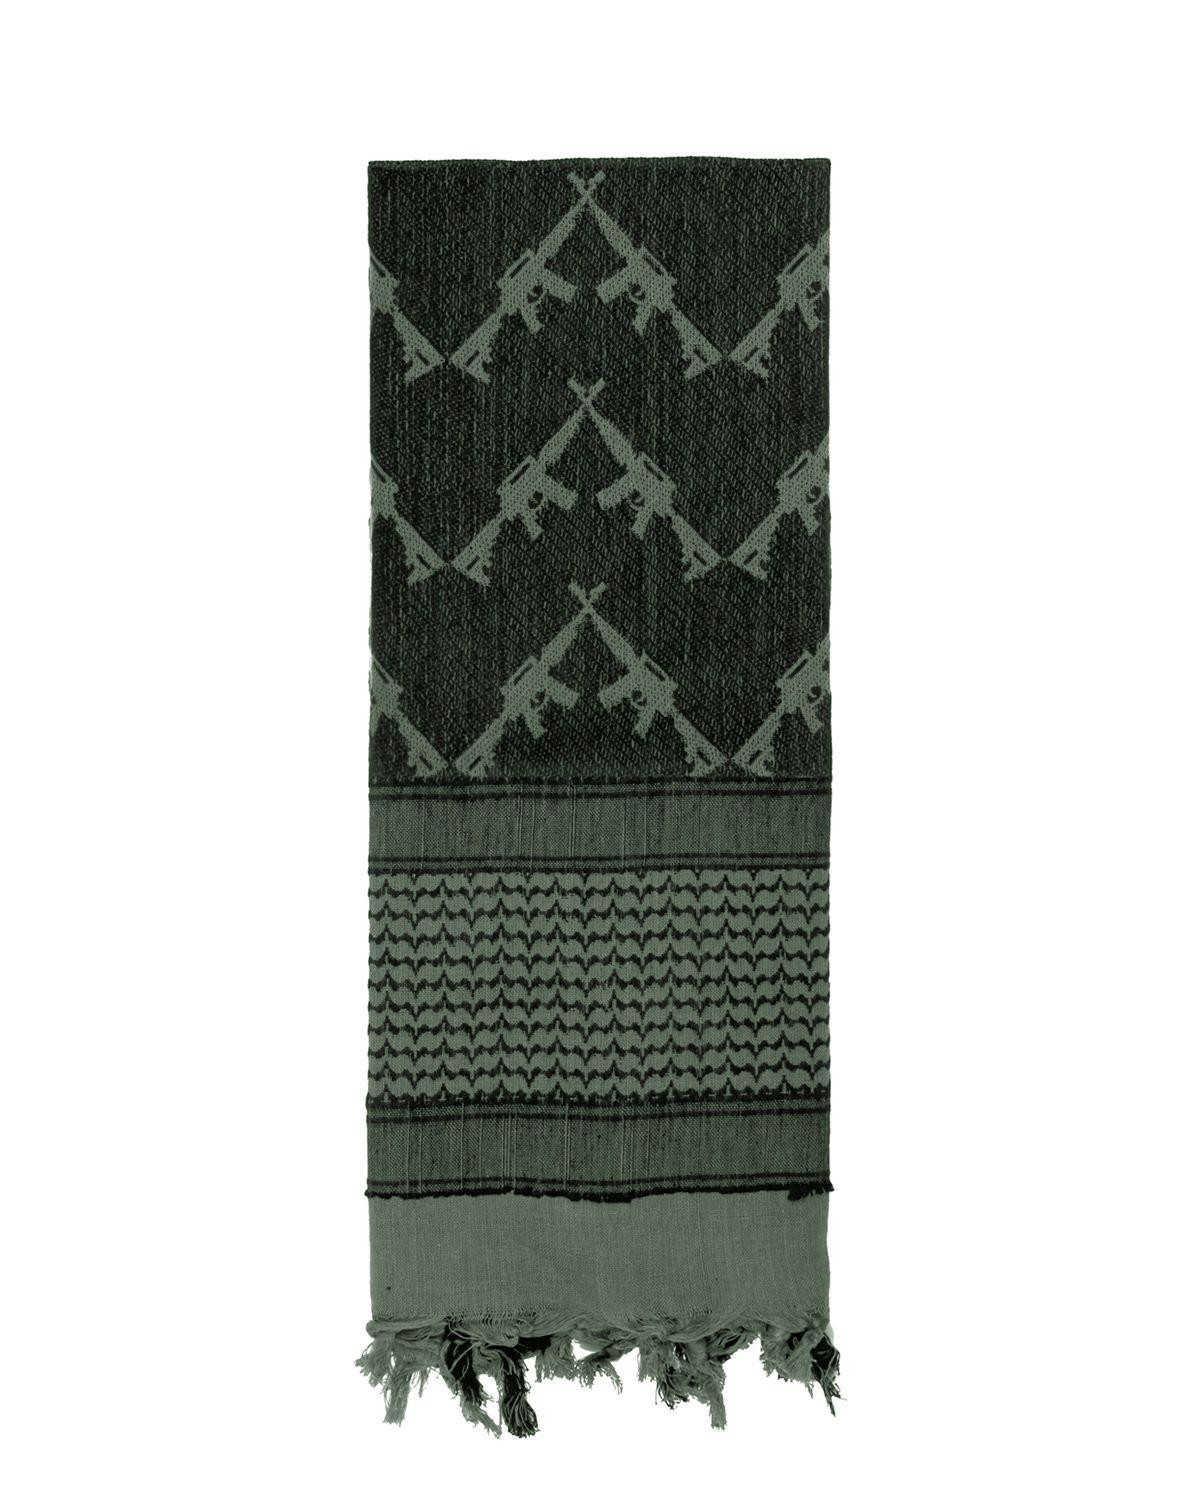 Rothco Taktisk Partisan Tørklæde - 'Crossed Rifle' (Blad Grøn, One Size)